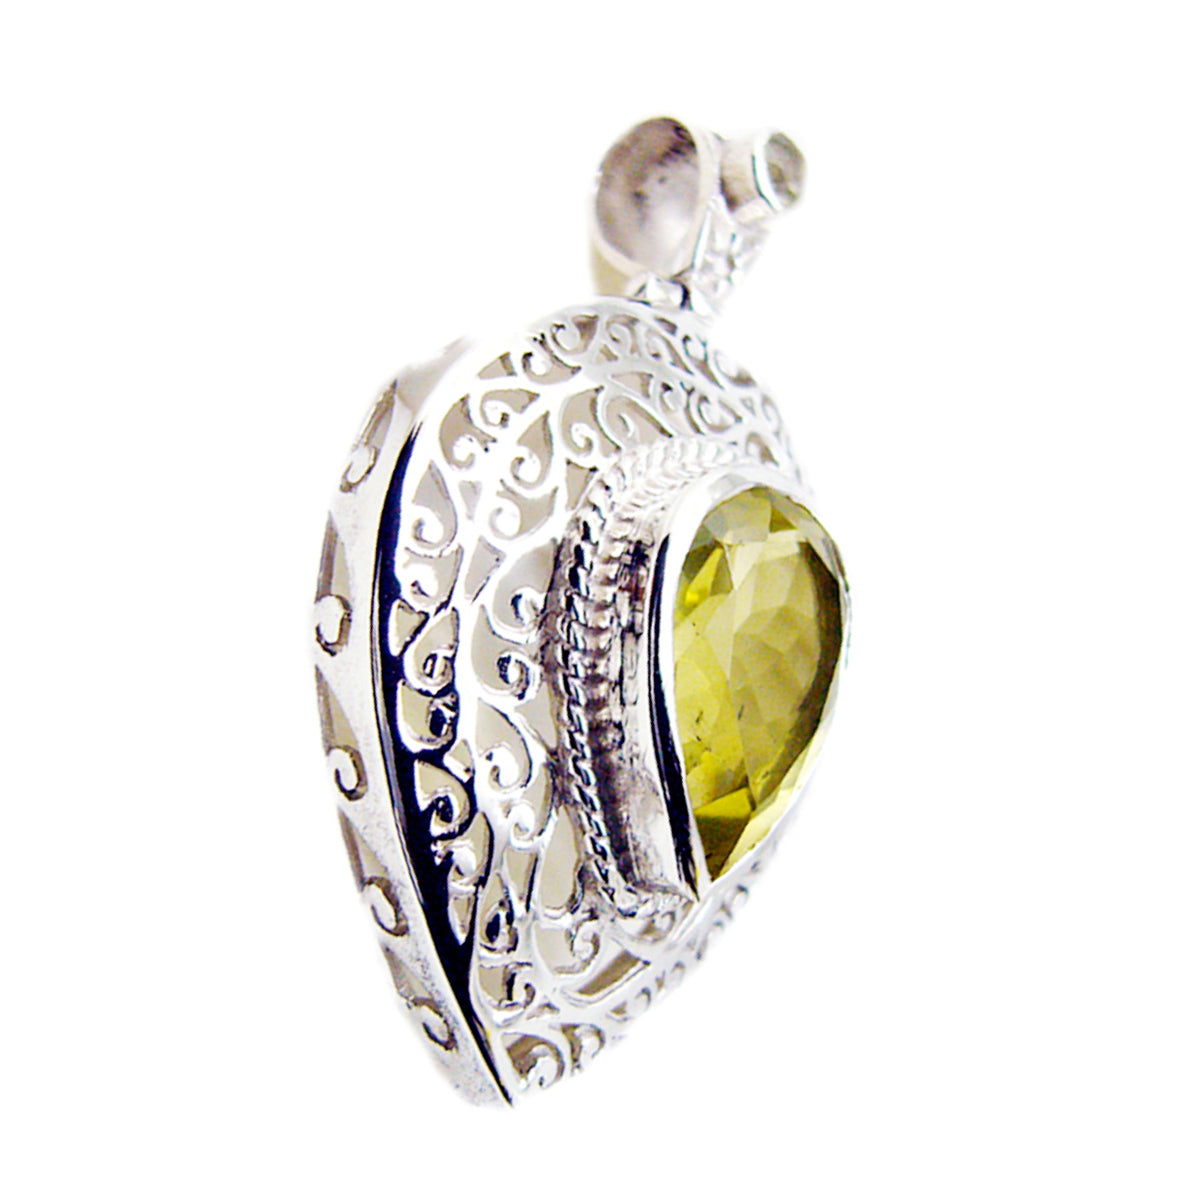 Riyo magnifique pierre précieuse poire à facettes jaune citron quartz 1000 pendentif en argent sterling cadeau pour petite amie